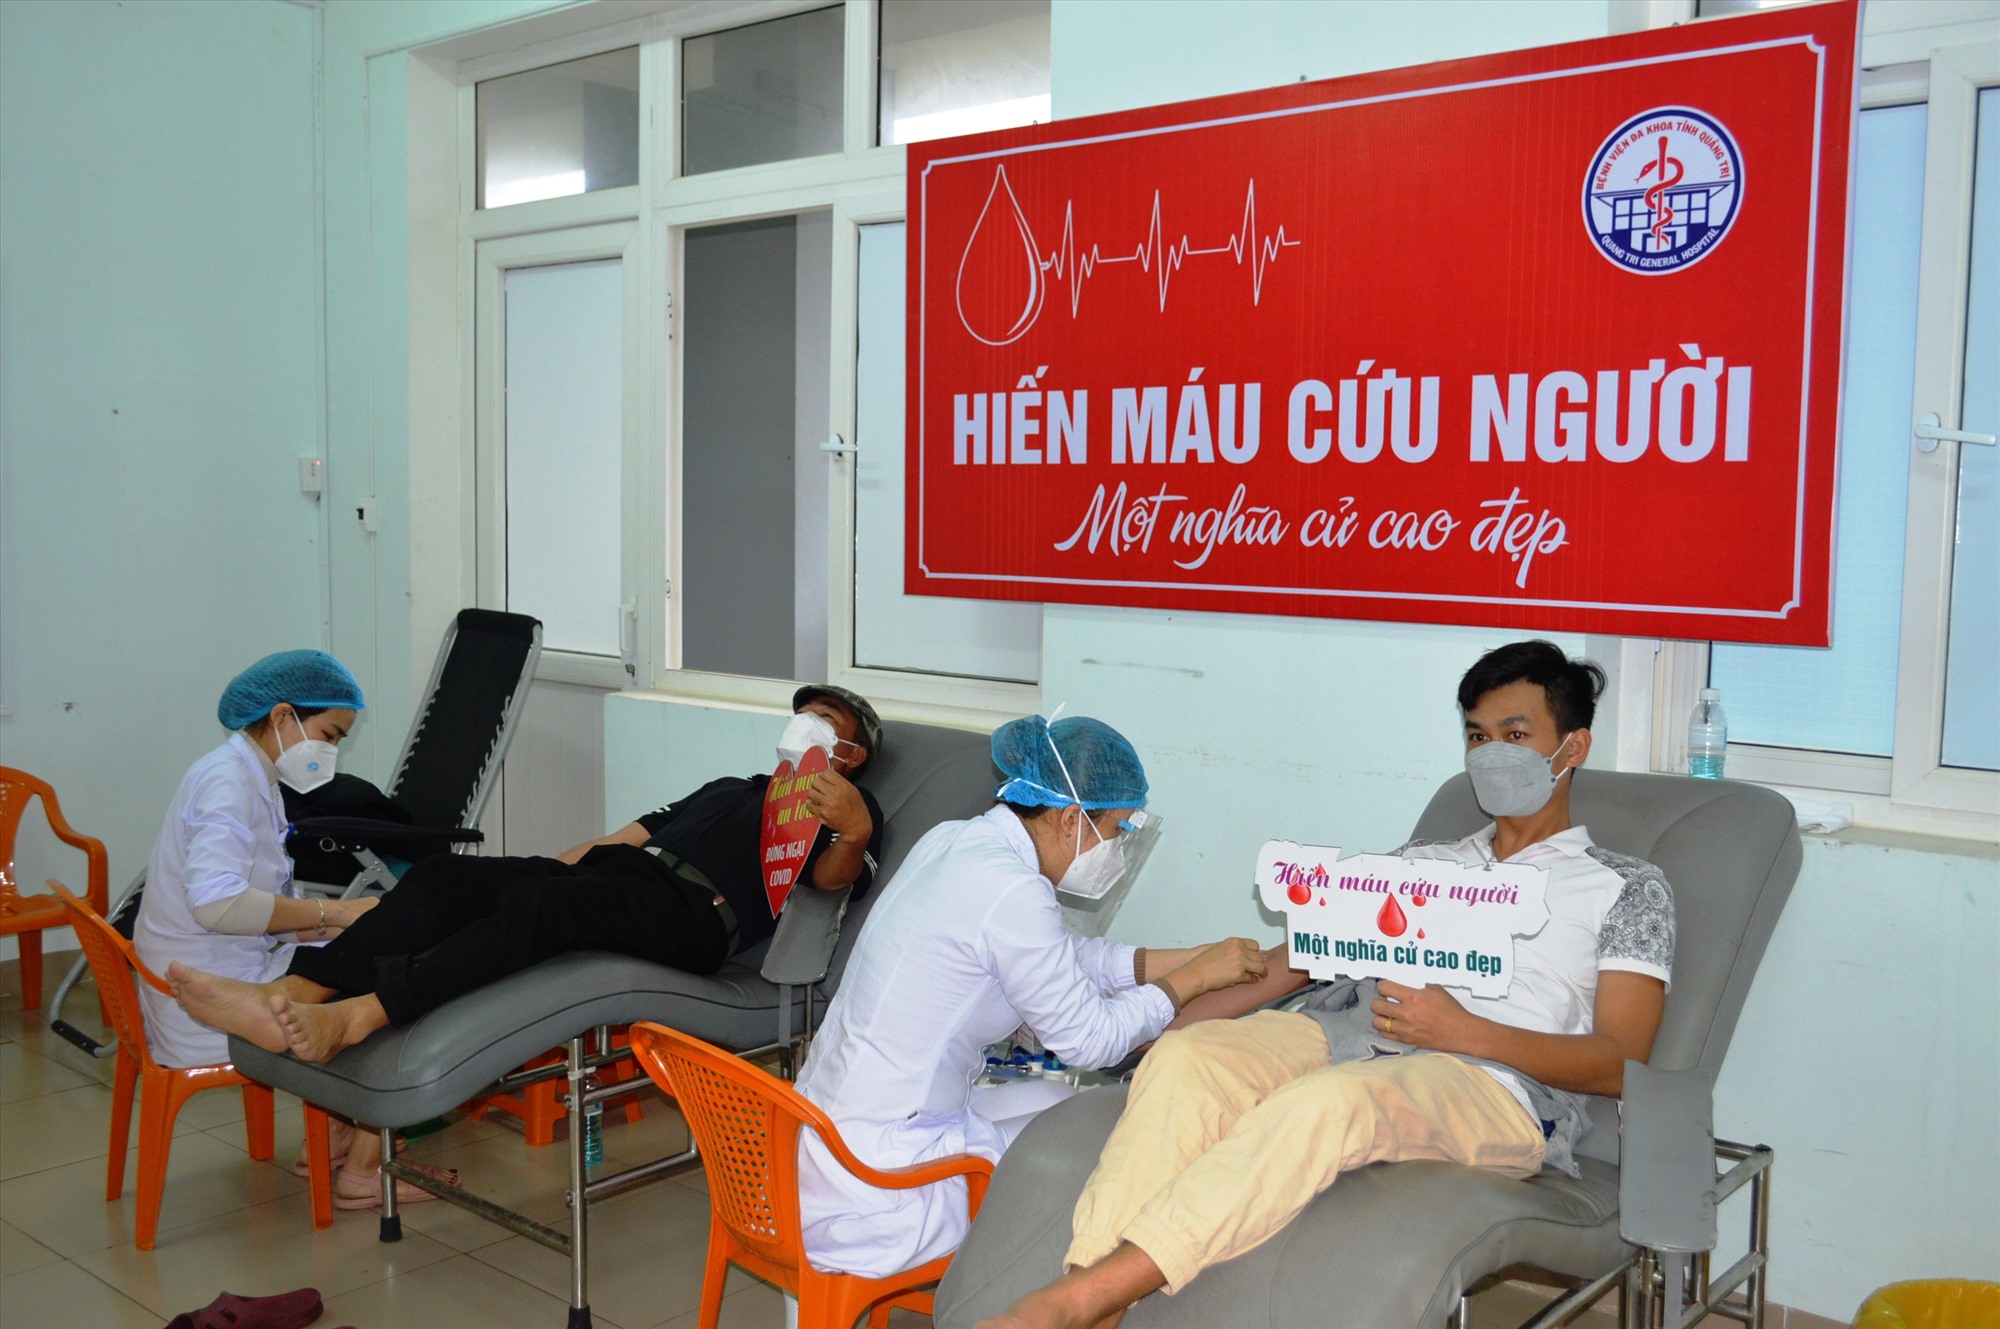 Ngày hội hiến máu tình nguyện “Chủ nhật đỏ” lần thứ XIV, đợt 1 năm 2022 thu hút 300 tình nguyện viên tham gia và thu được hơn 200 đơn vị máu - Ảnh: ĐV